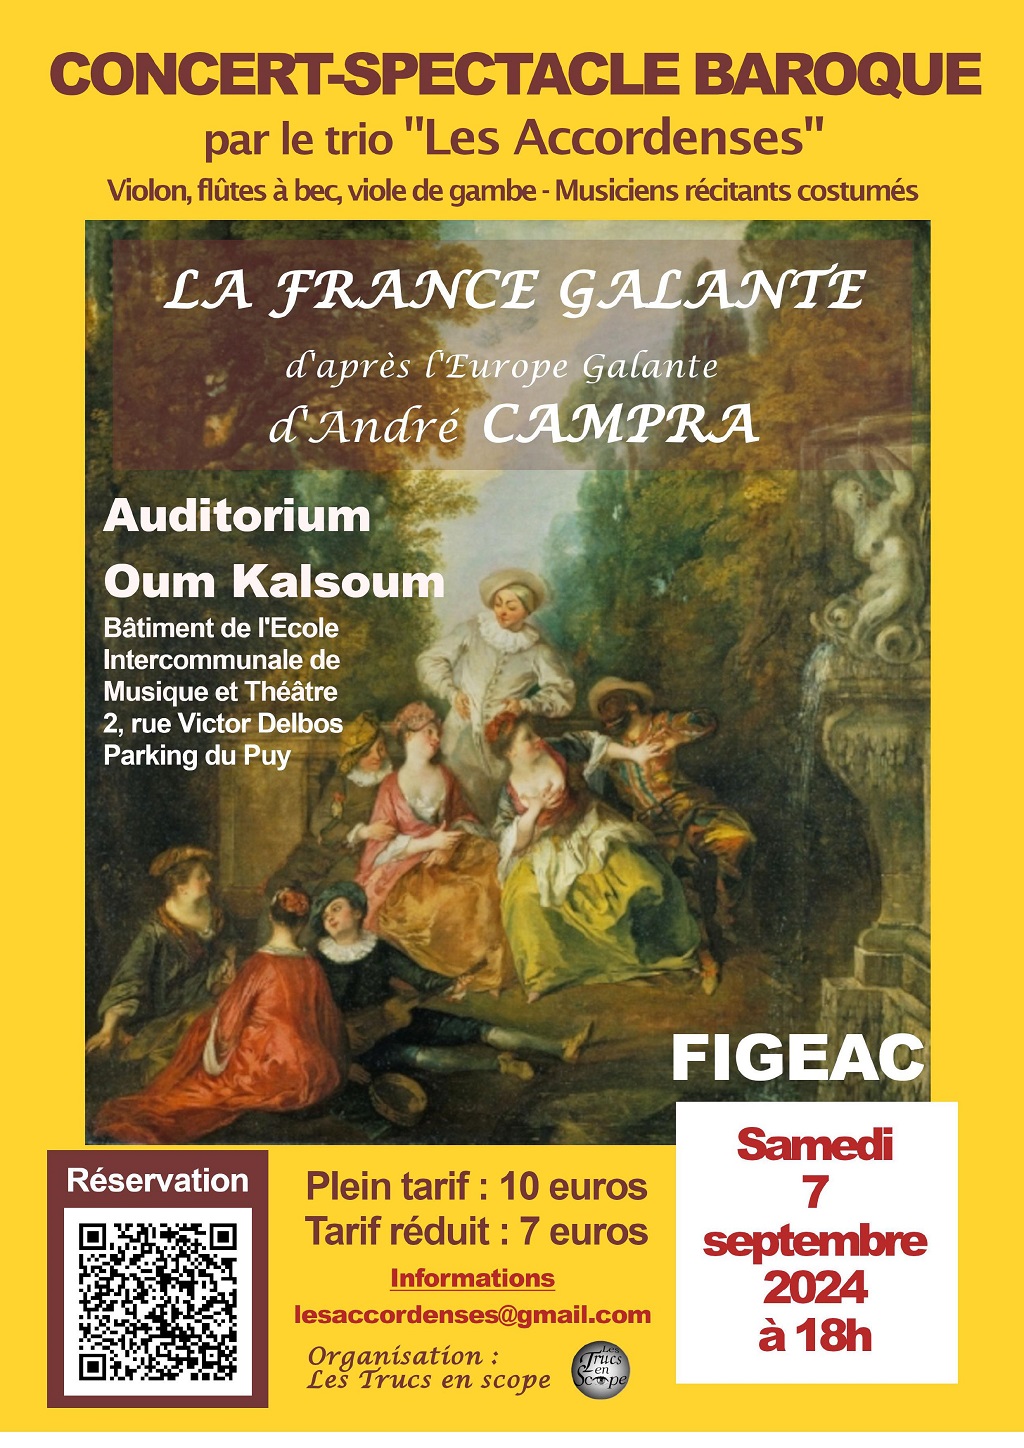 Figeac : Concert Baroque à l’Auditorium Oum Kalsoum à Figeac